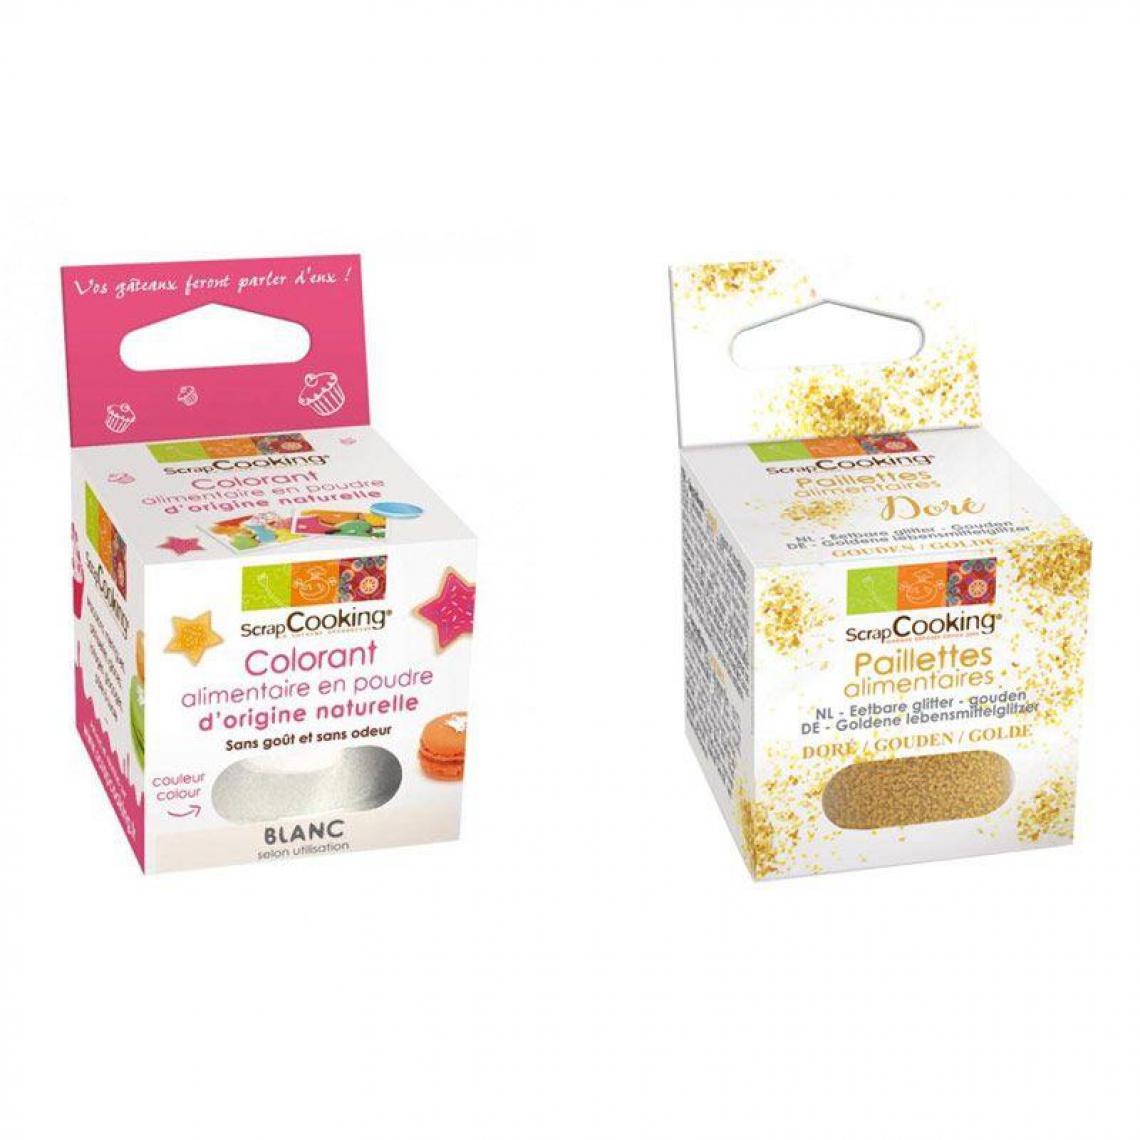 Scrapcooking - Colorant alimentaire naturel en poudre Blanc + paillettes dorées - Kits créatifs